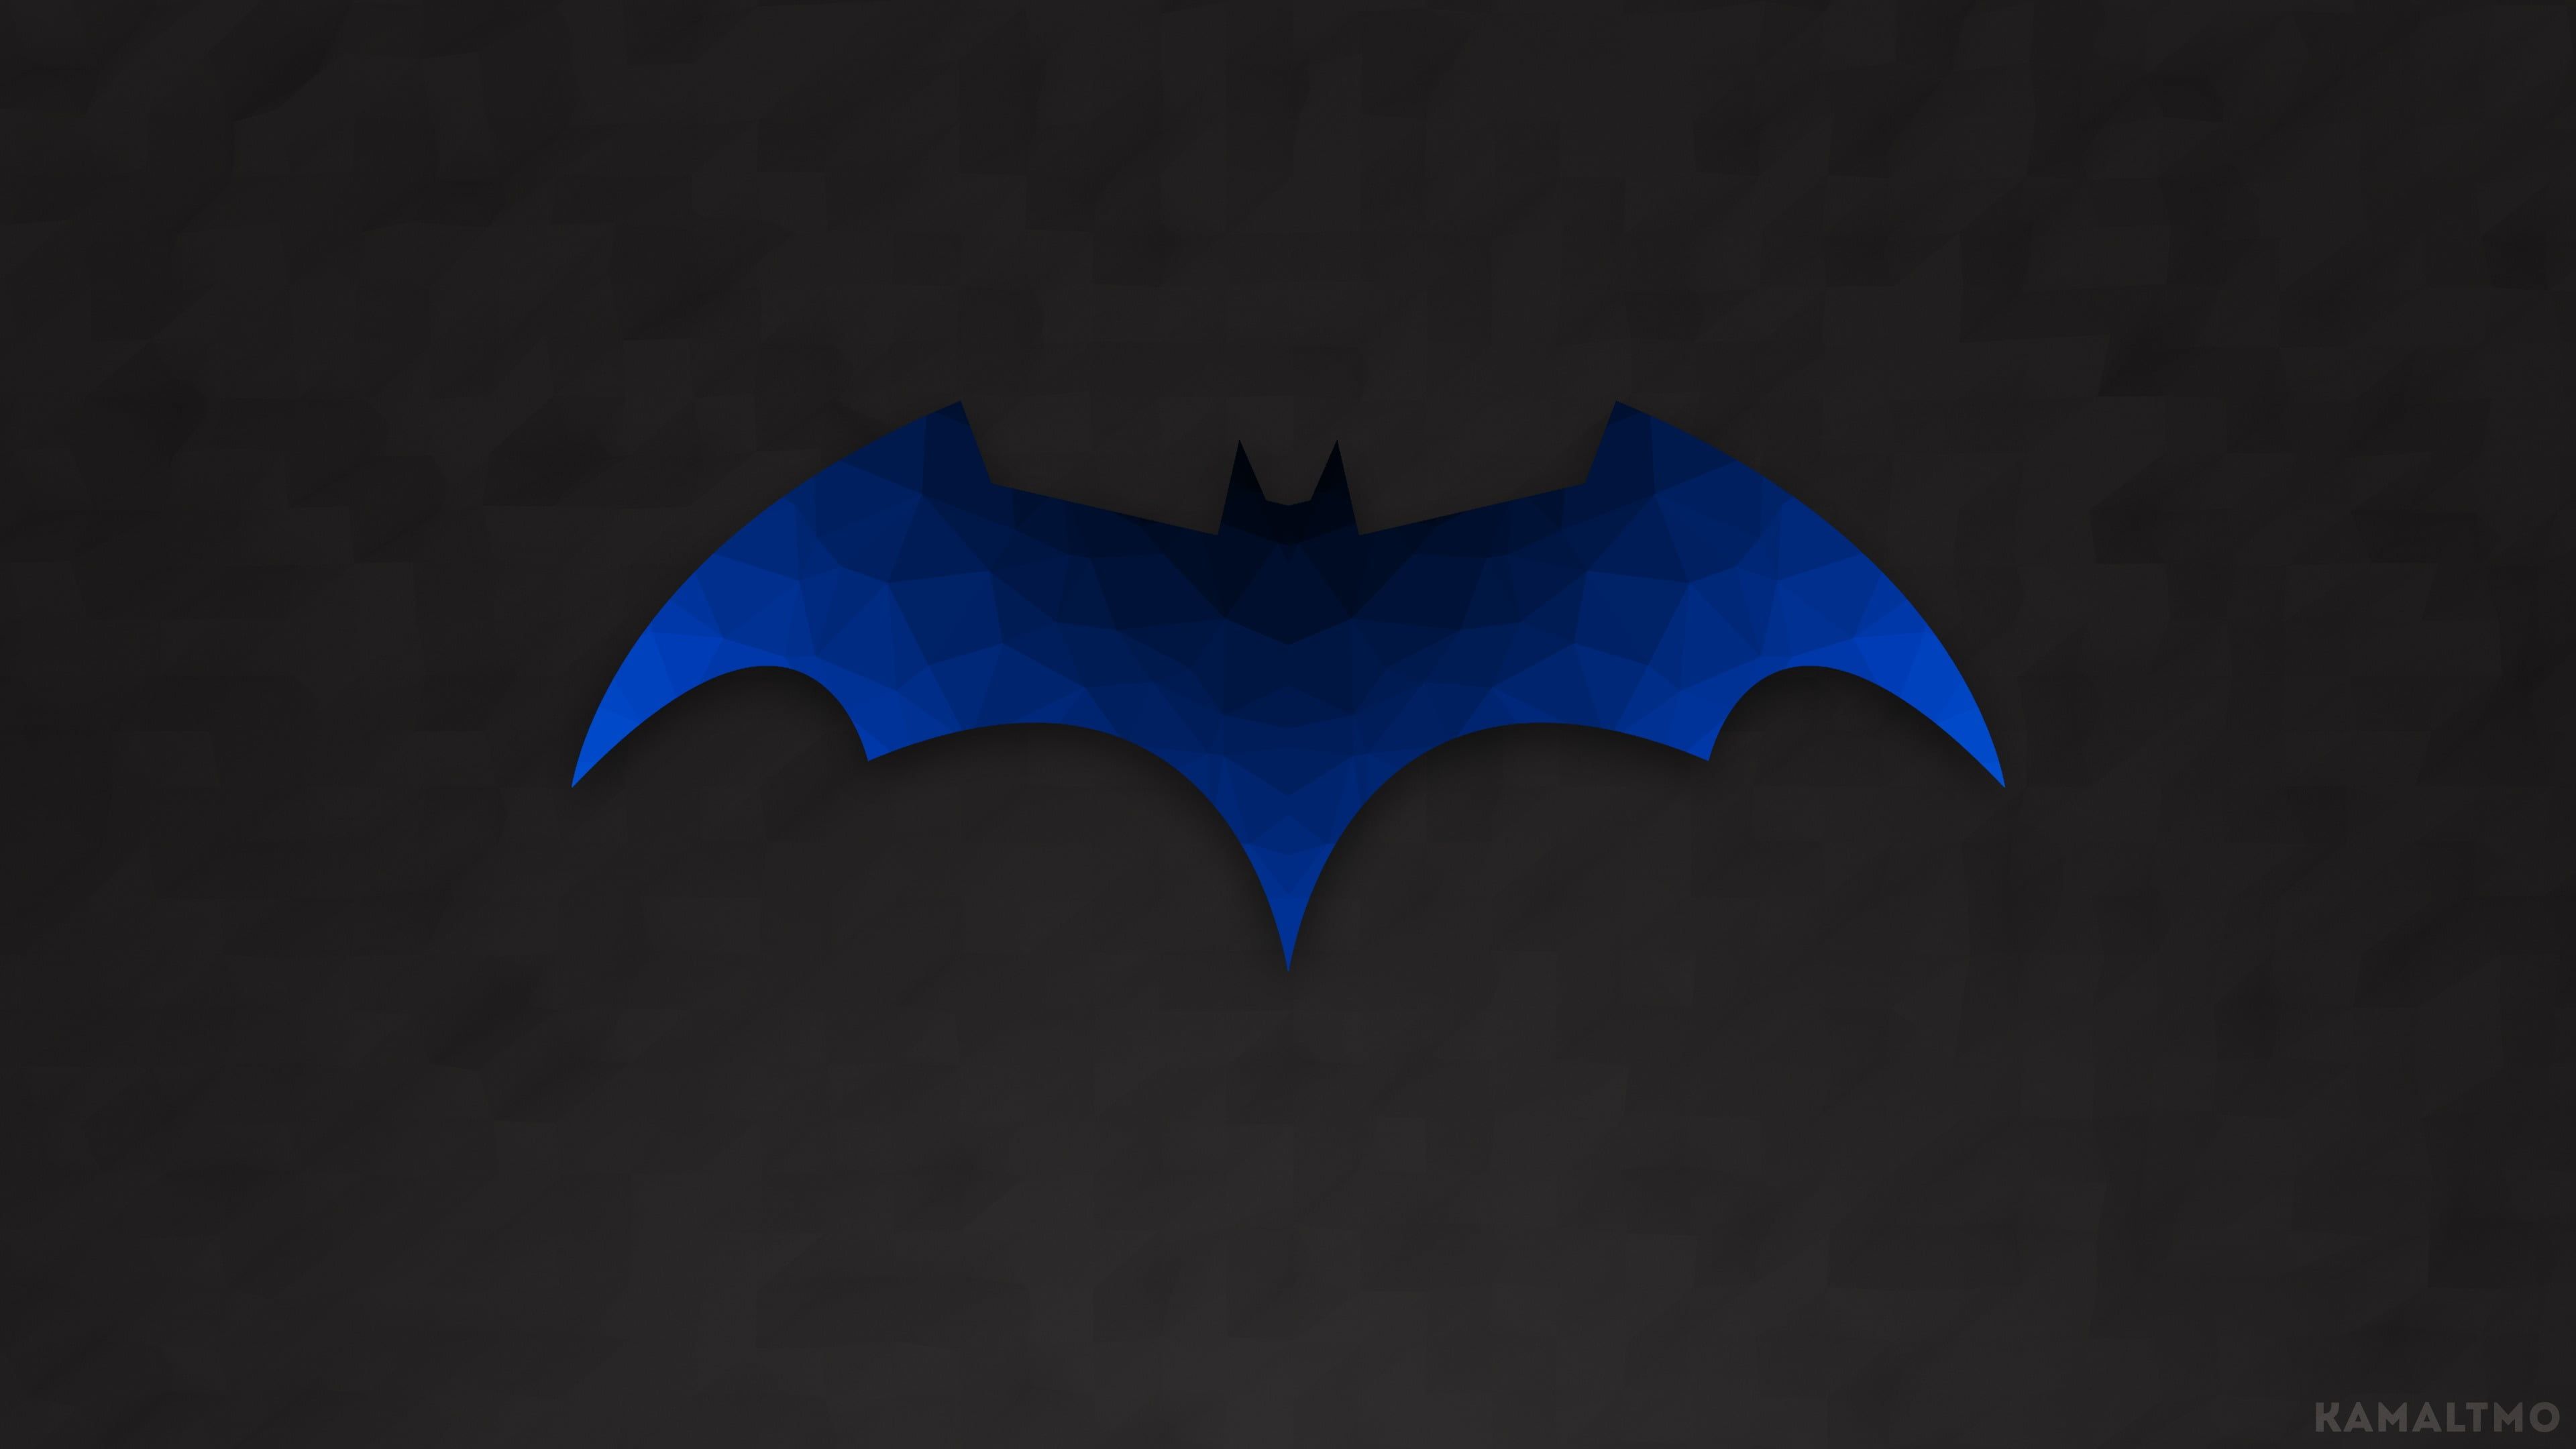 Batman Batman logo #logo #poly polygon art low poly #vector K #wallpaper #hdwallpaper #desktop. Polygon art, Batman logo, Geometric artwork